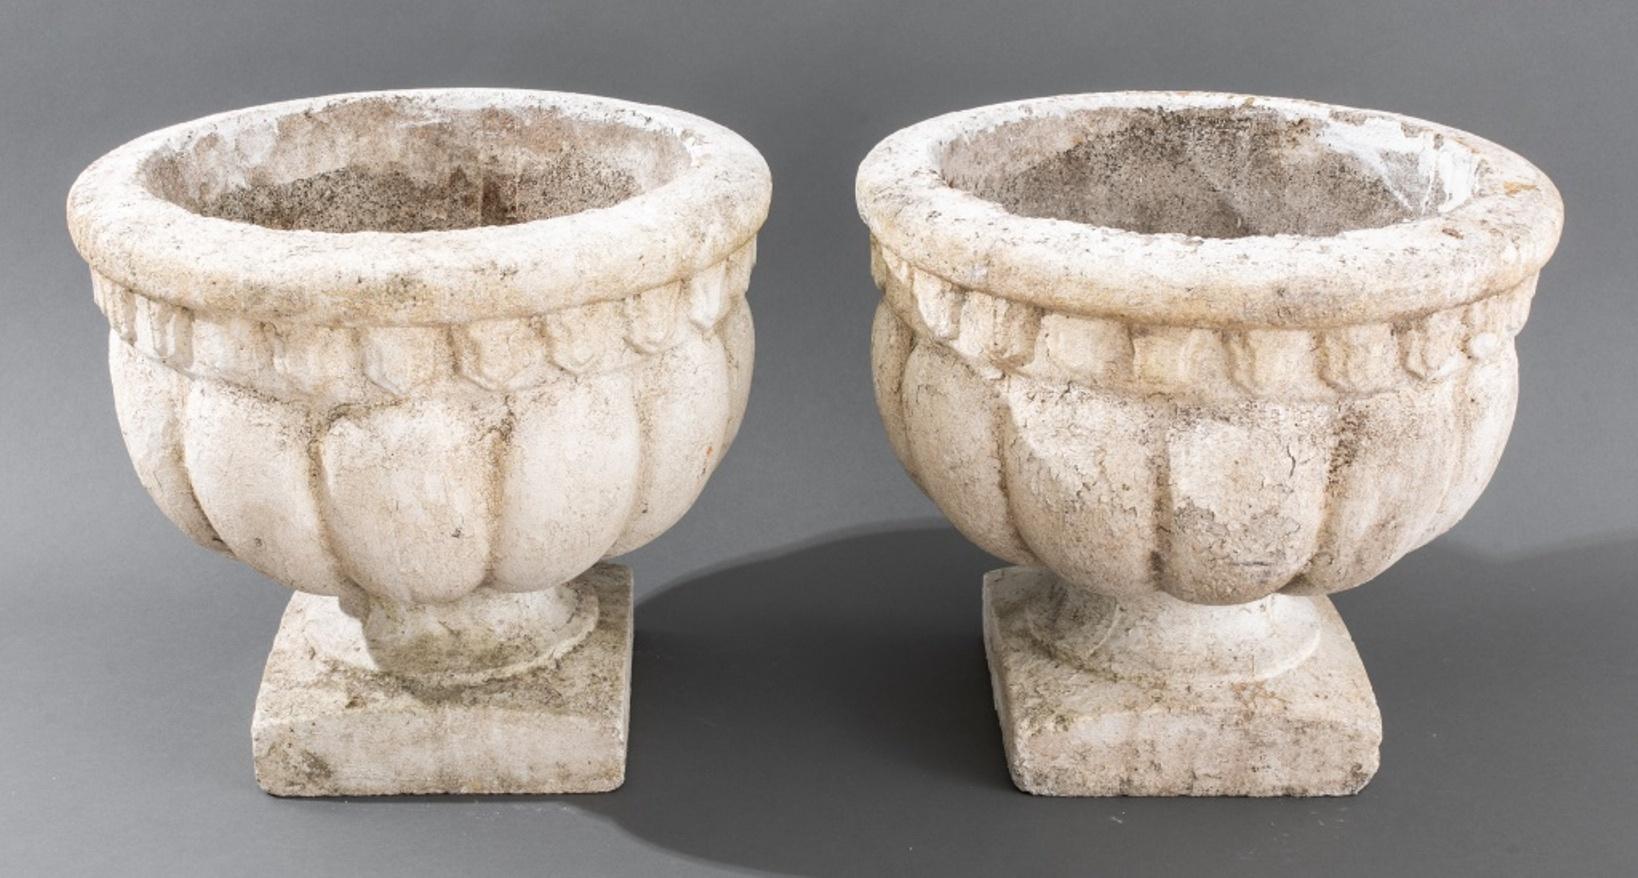 Paire d'urnes en pierre moulée peinte en blanc de style classique, 20e siècle, avec des côtés à godrons et une lèvre évasée au-dessus d'un socle sur une base carrée.

Dimensions : 13